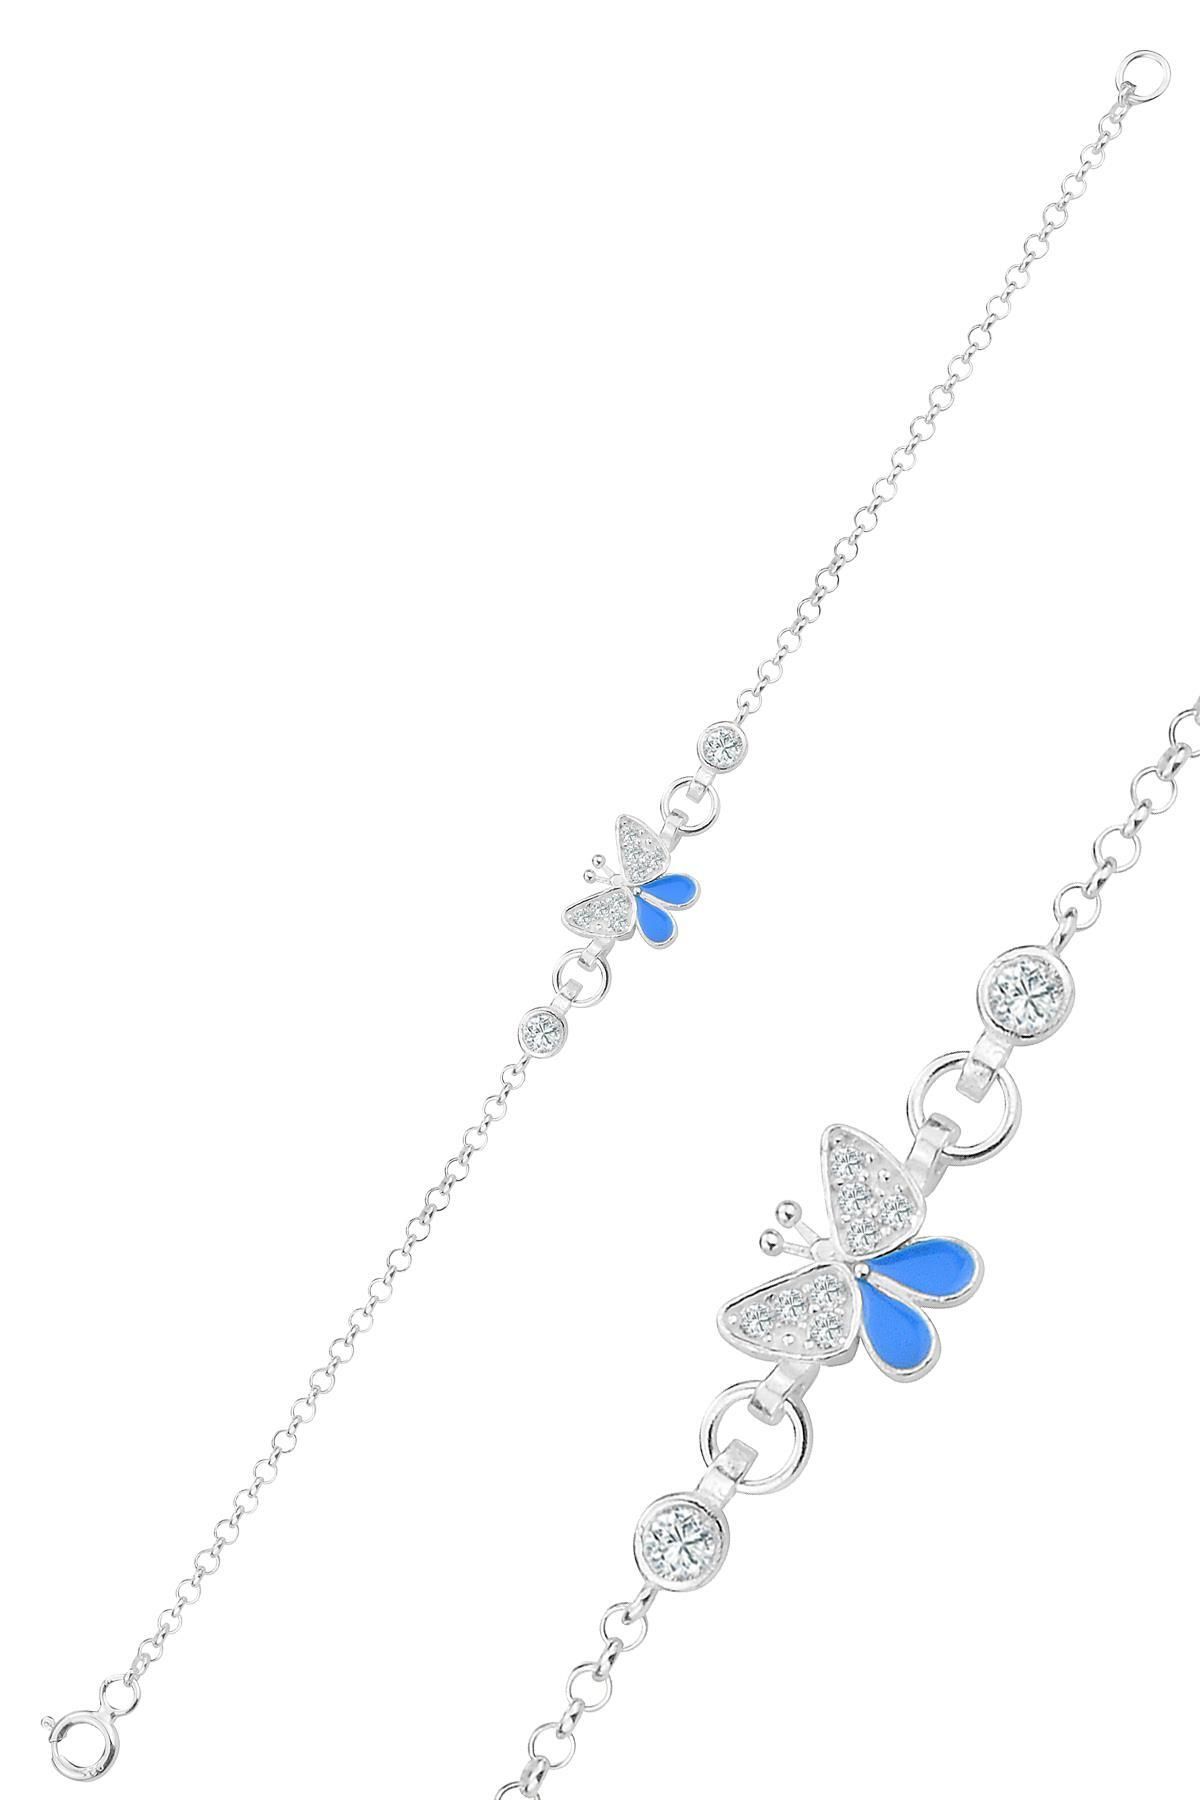 Söğütlü Silver Gümüş zirkon taşlı mavi mineli kelebek modeli çocuk bileklik SGTL12322MAVI